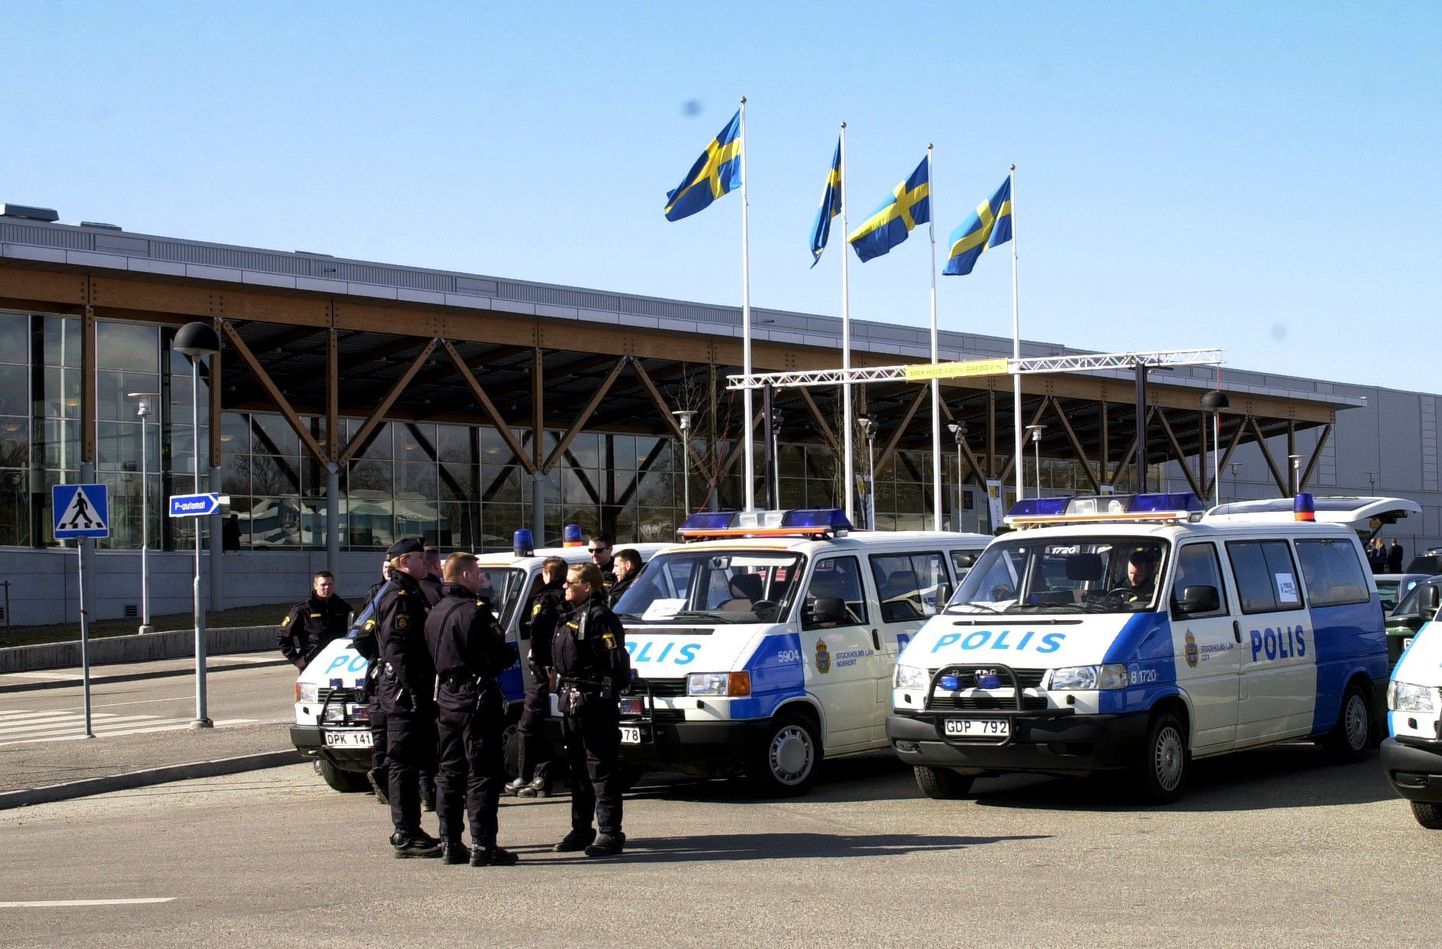 Rootsi politseinikud ja -autod